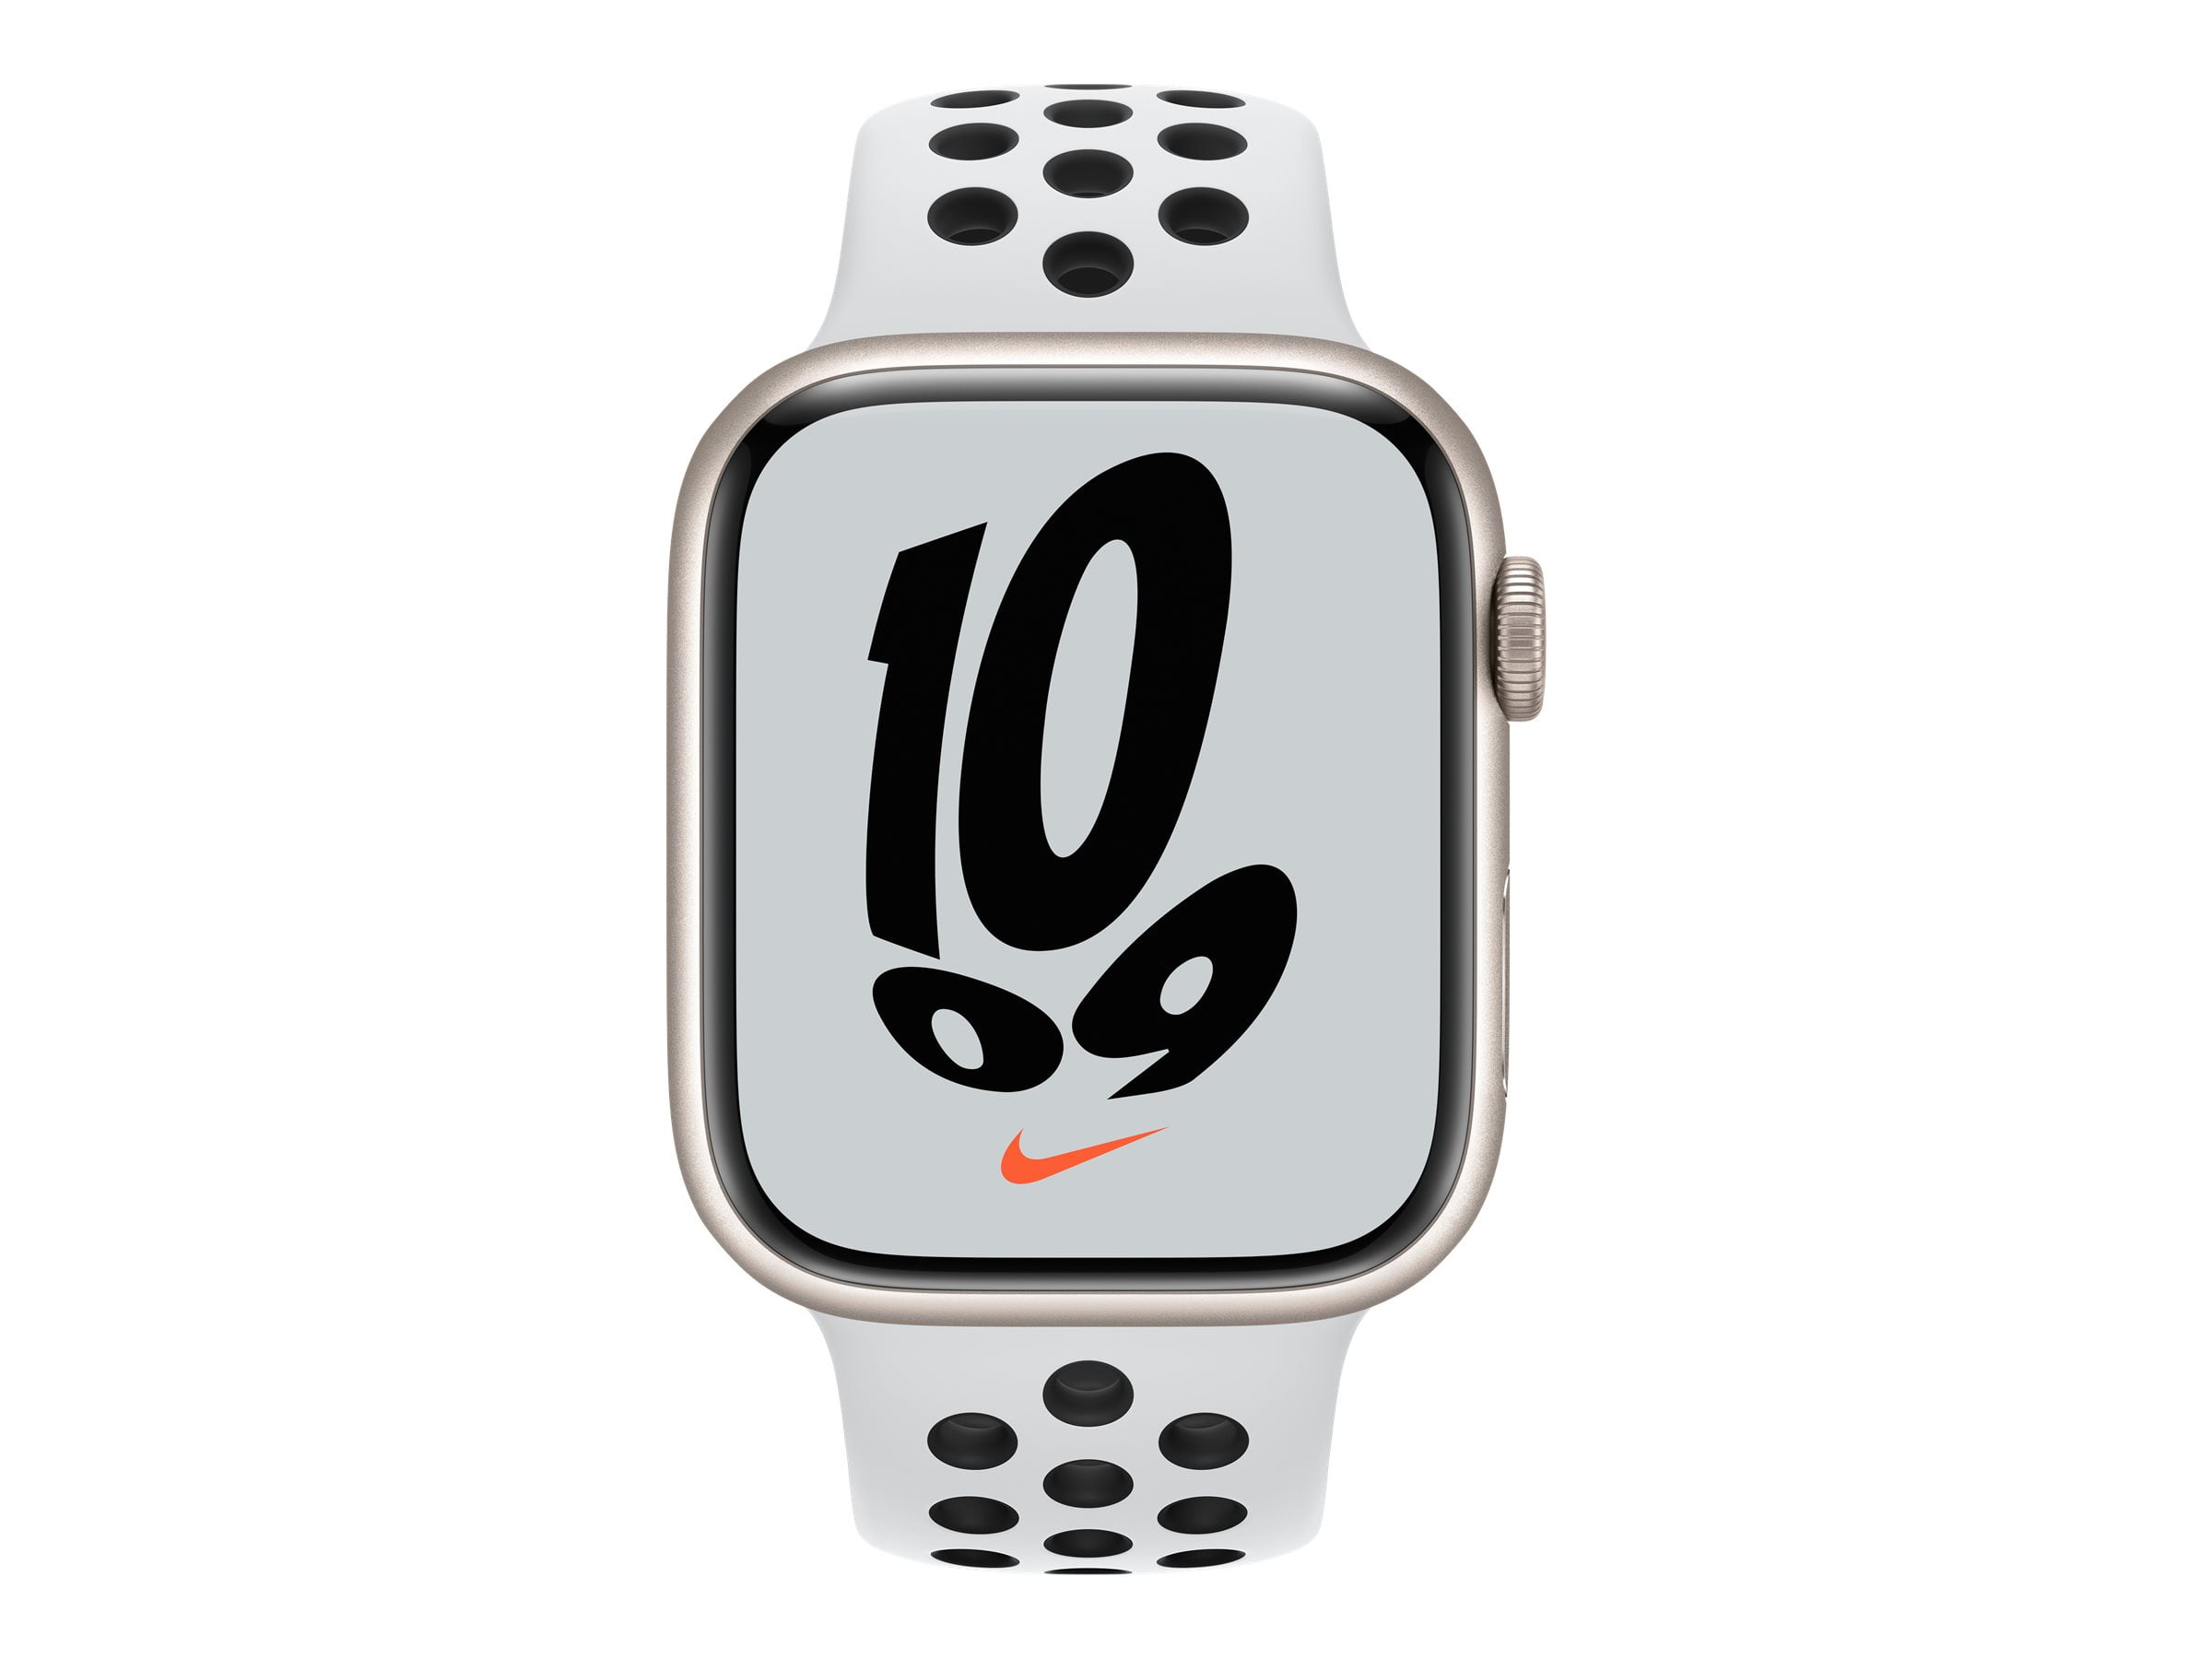 埼玉県ふじみ野市  45mm 7 Series Nike Watch 【未使用品】Apple その他